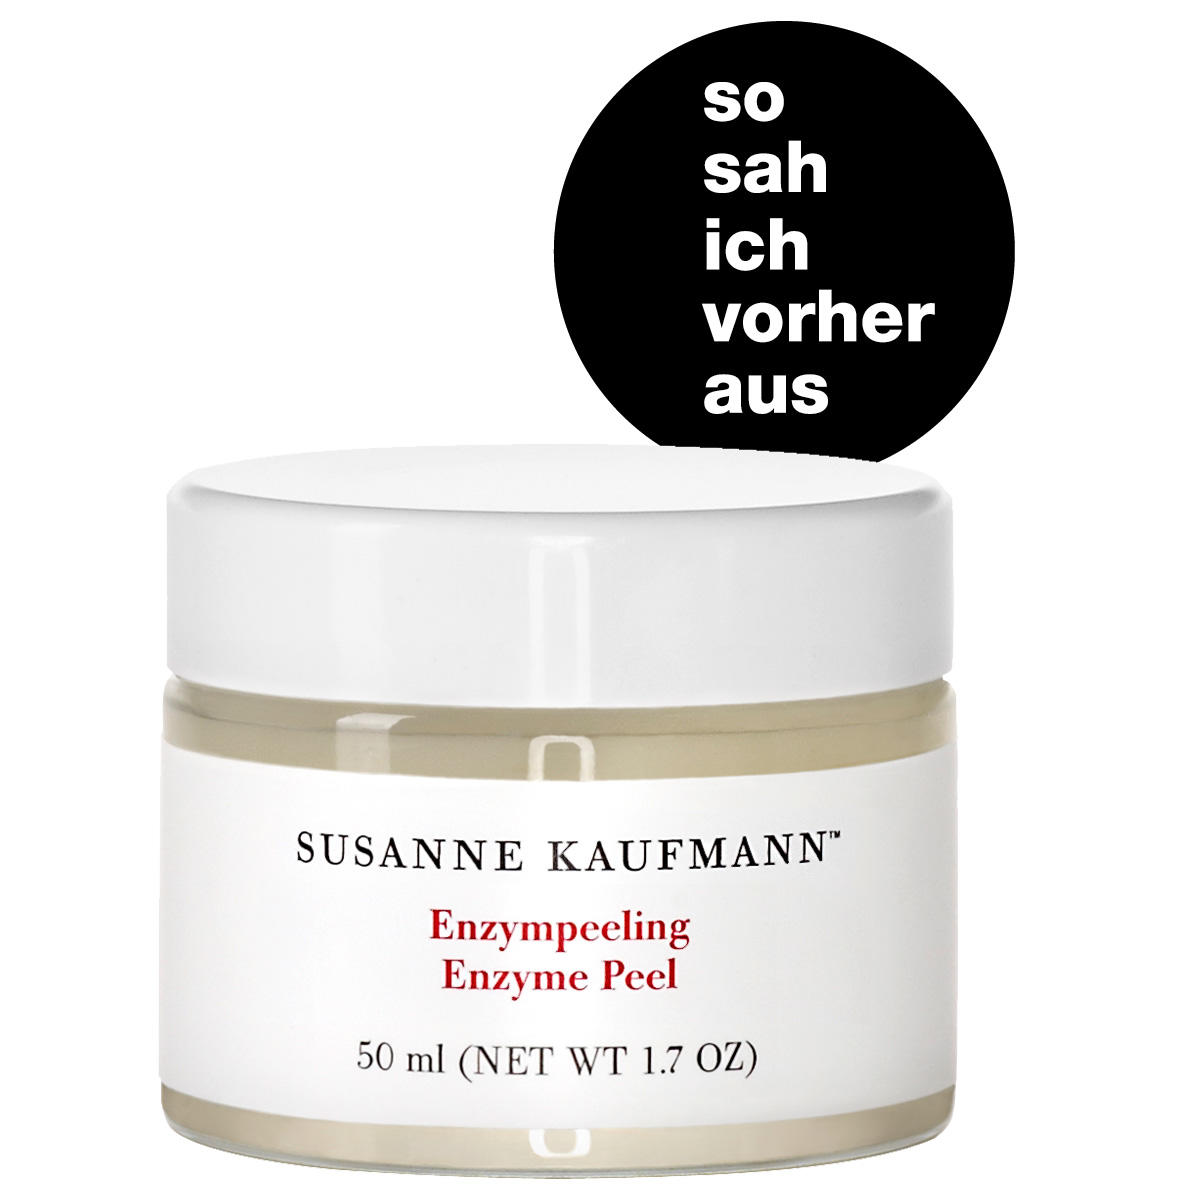 Susanne Kaufmann Enzyme peeling 50 ml - 5